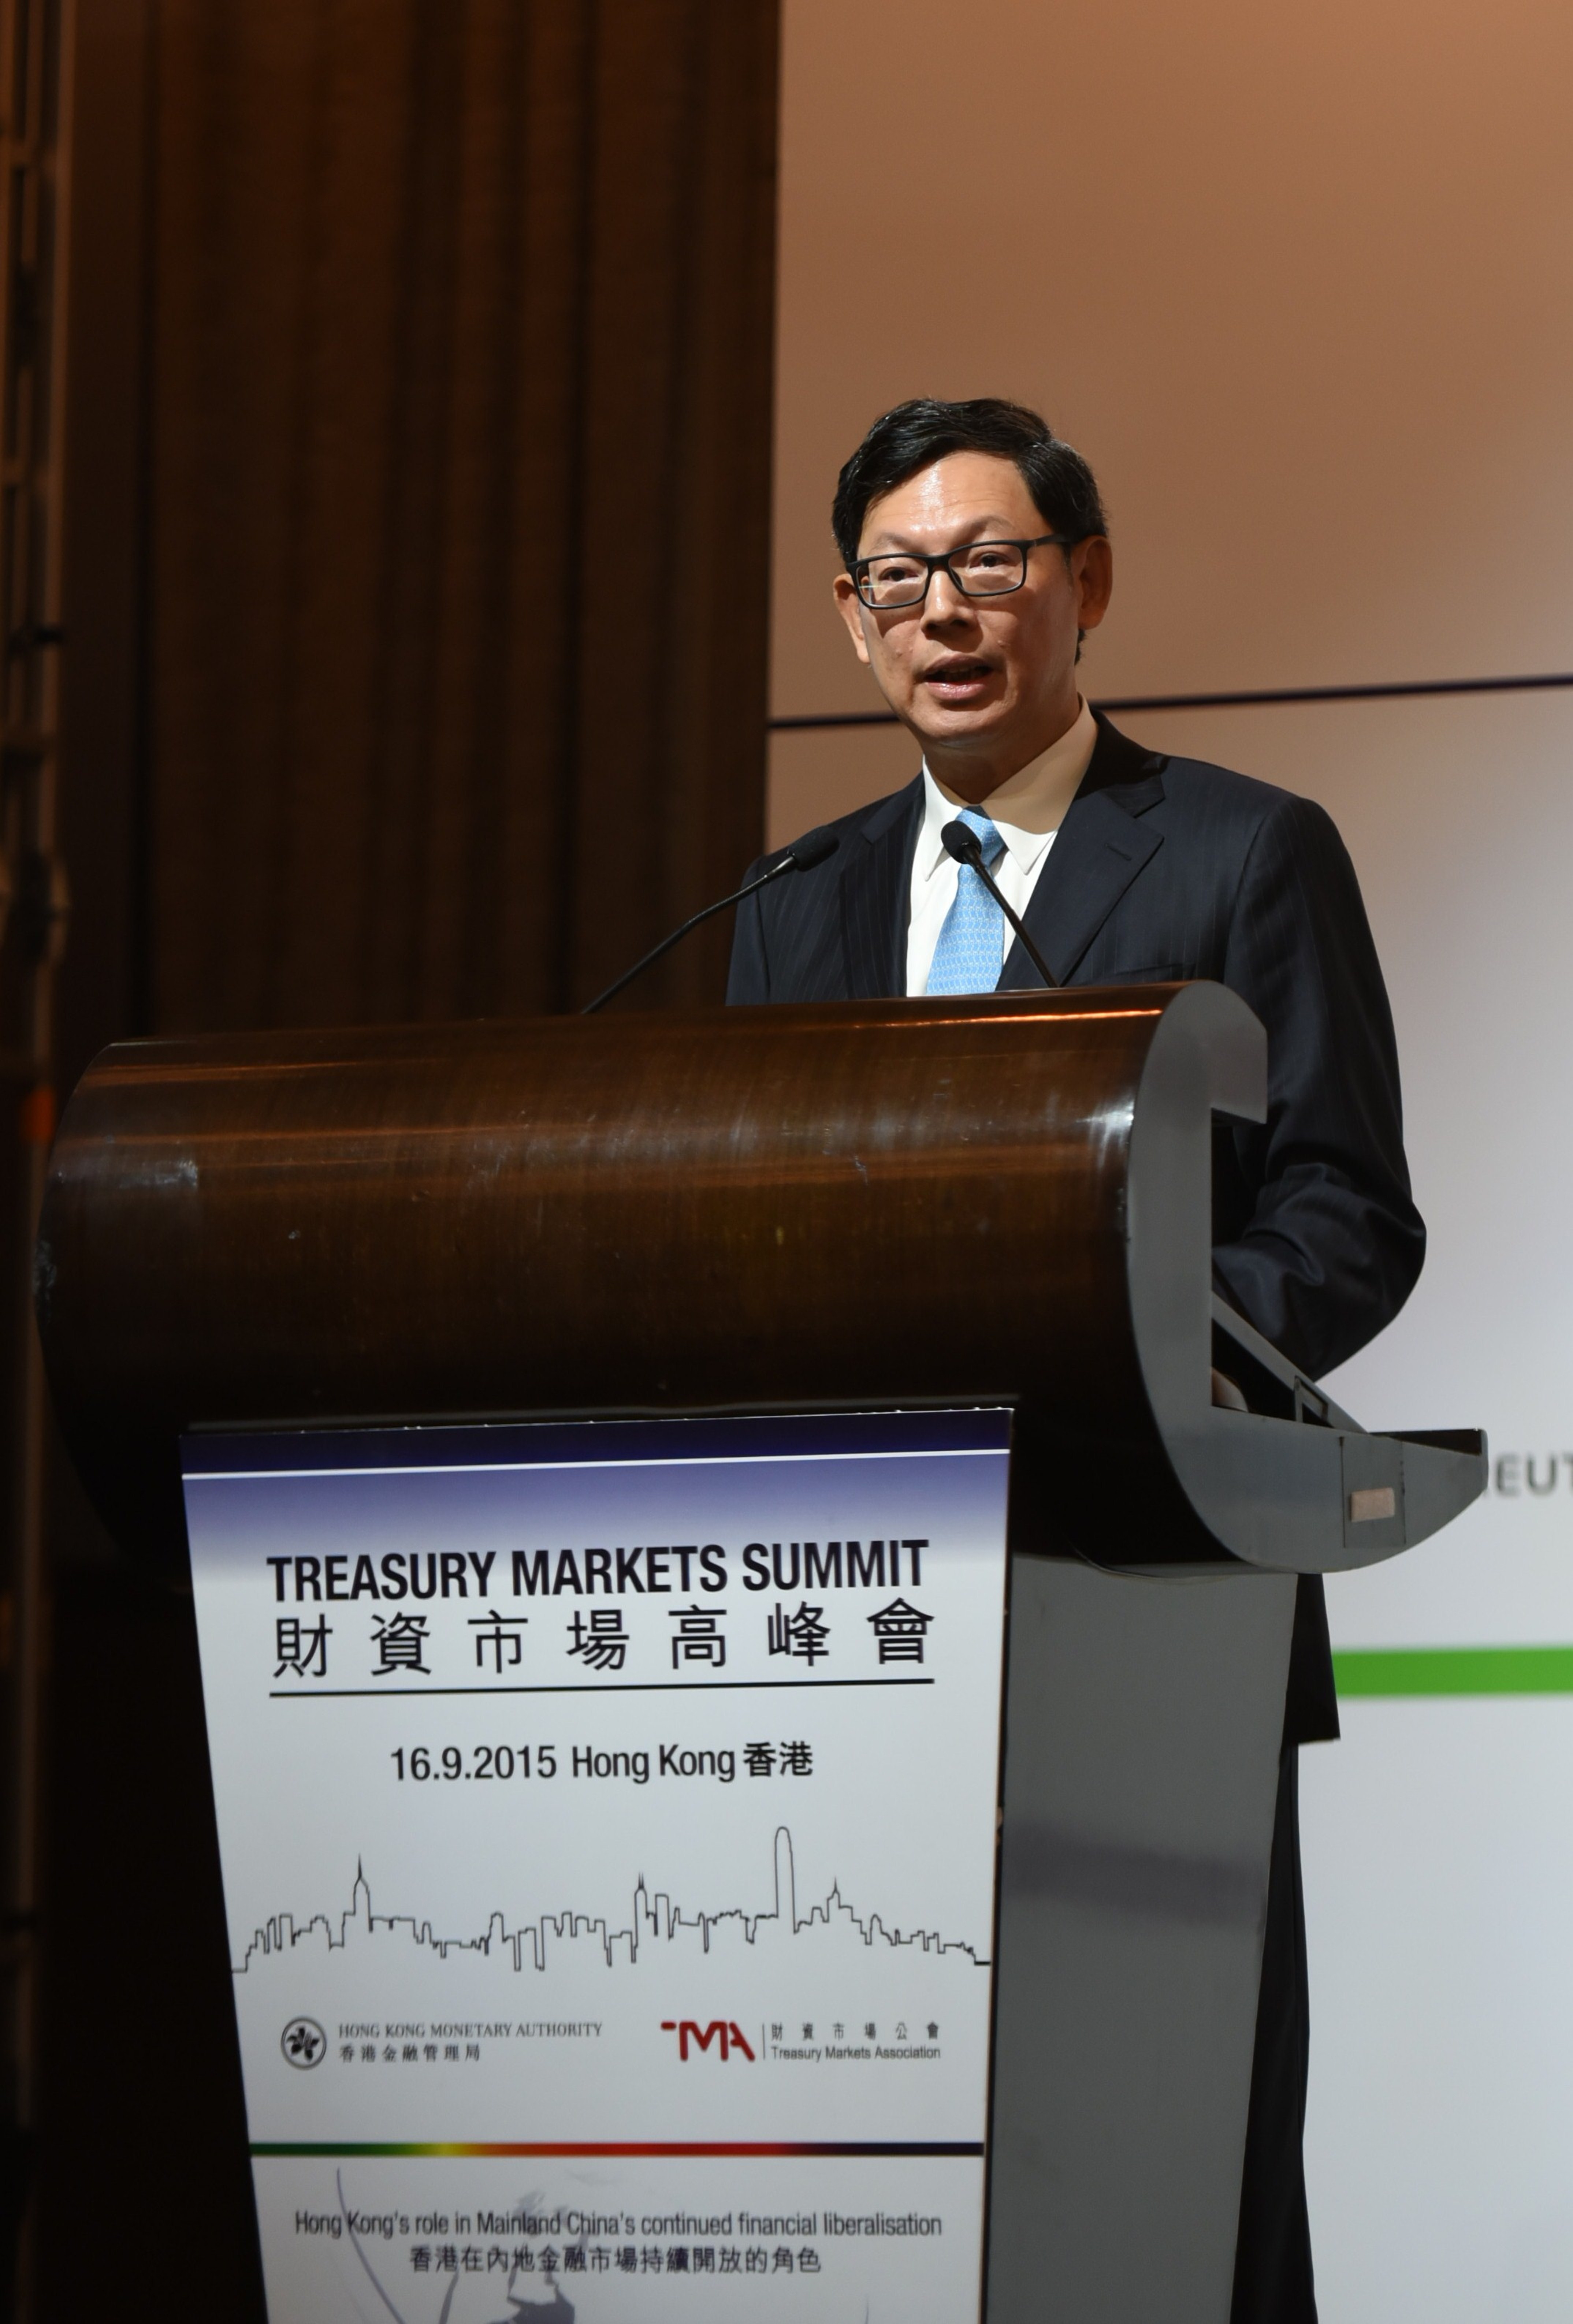 香港金融管理局总裁陈德霖先生在香港举行的2015年财资市场高峰会上发表主题演讲。